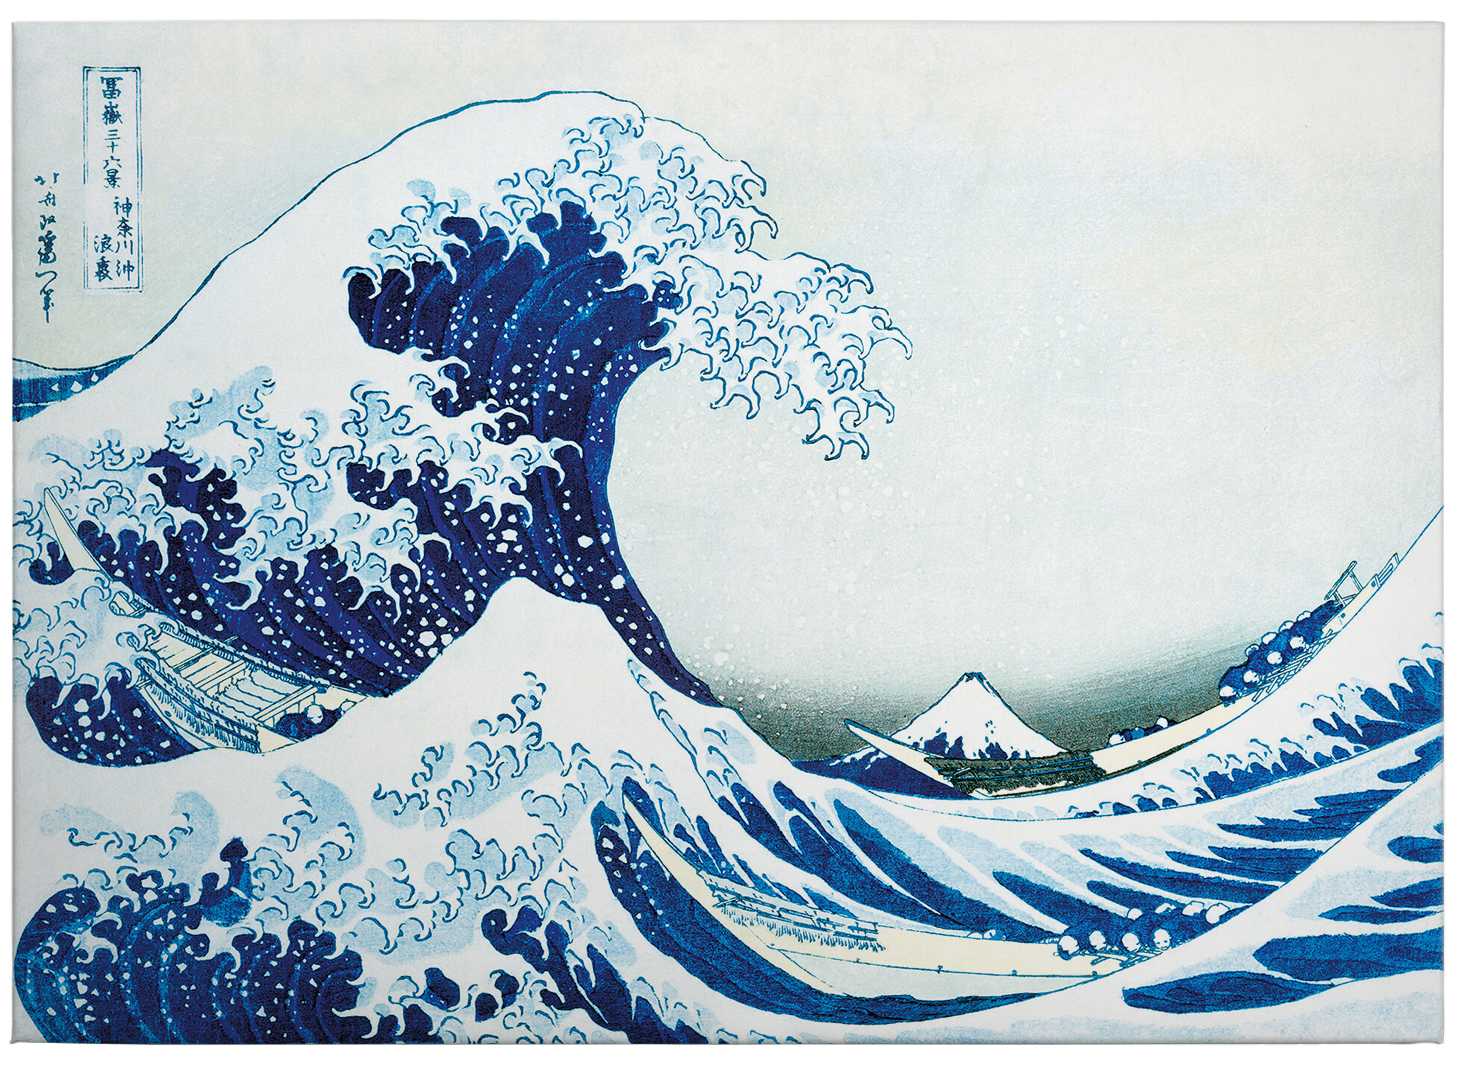             Canvas print "The great wave at Kanagawa" by Hokusai
        